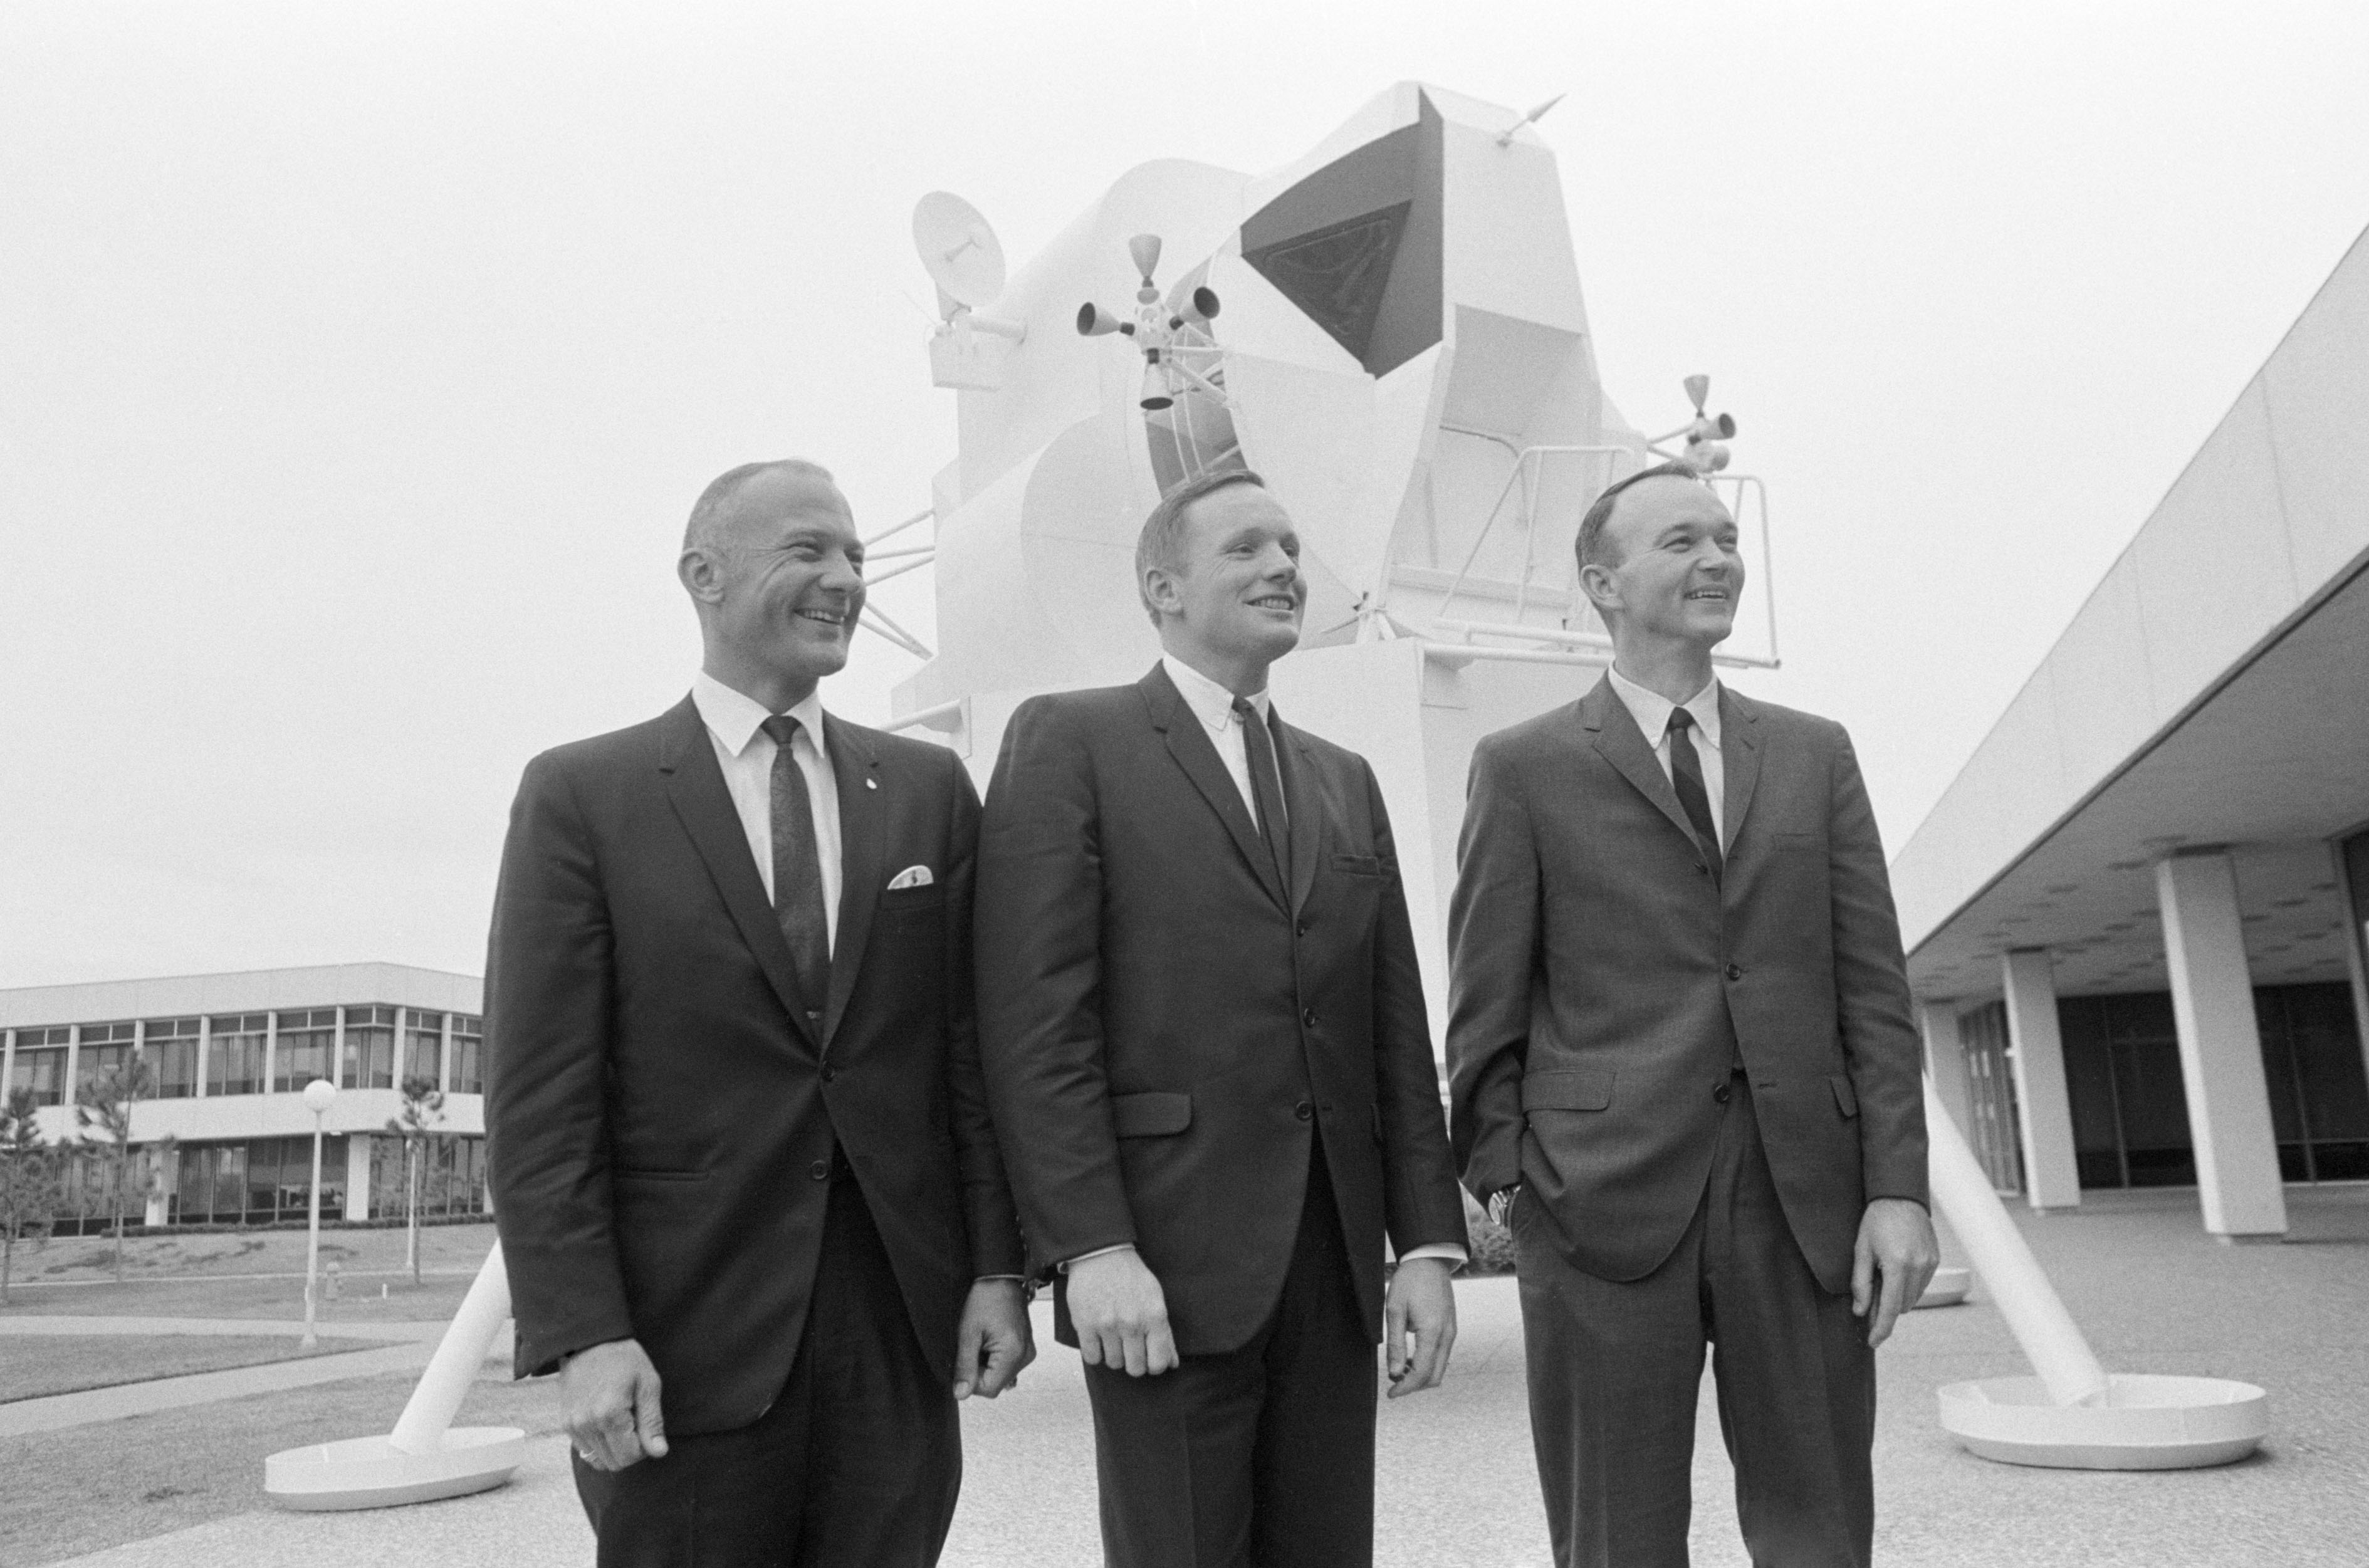 Apollo 11 crew of Edwin E. “Buzz” Aldrin, left, Neil A. Armstrong, and Michael Collins